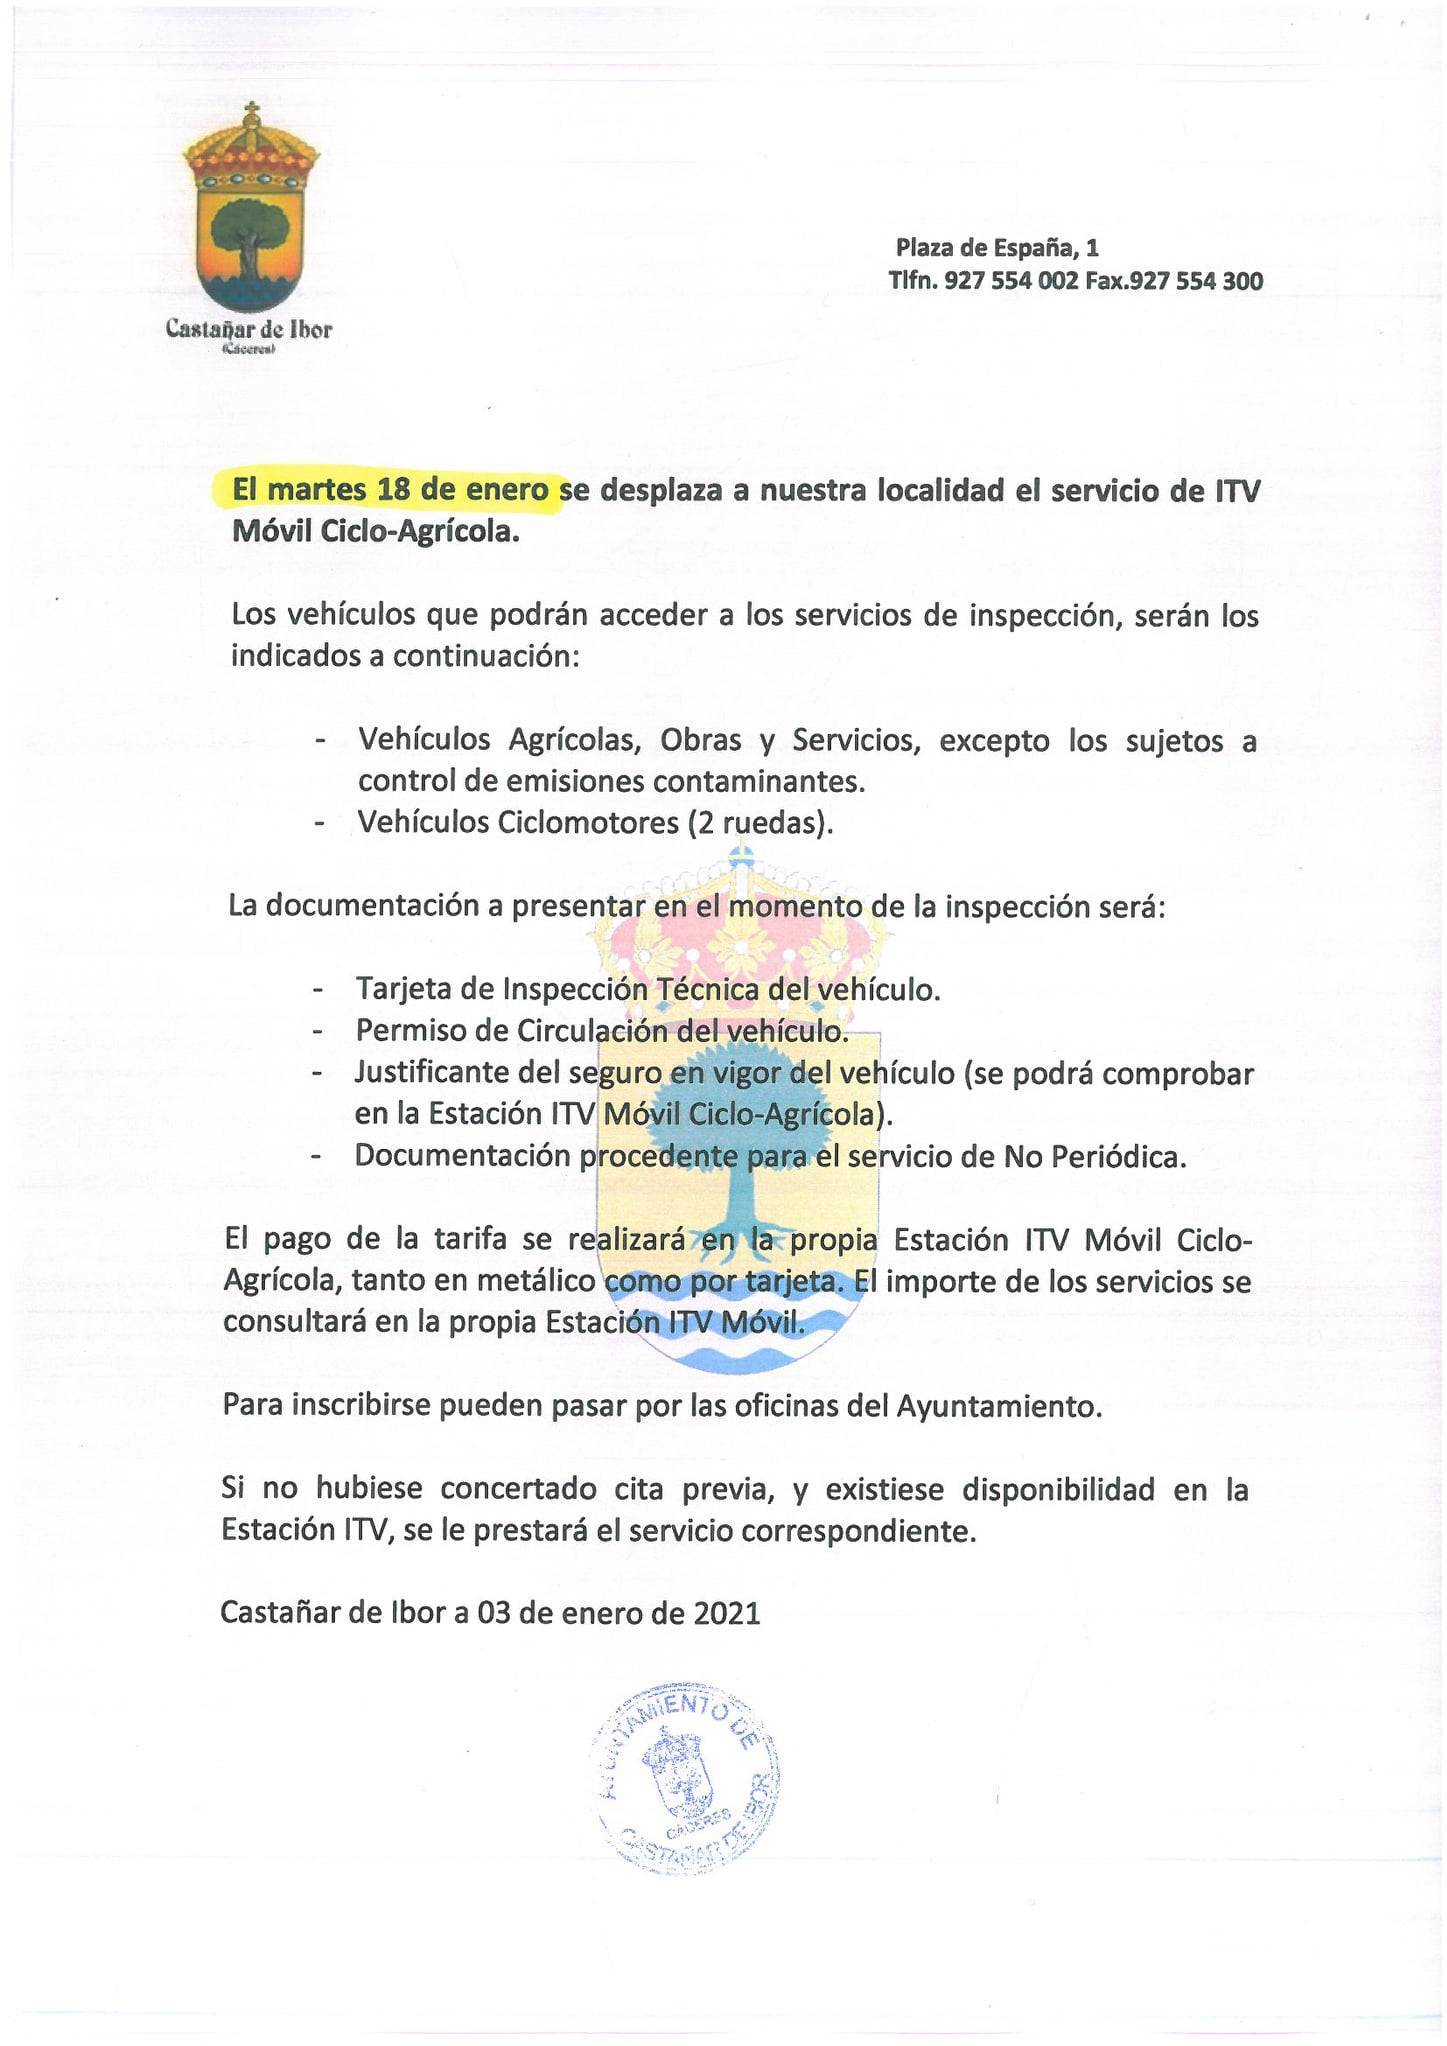 Desplazamiento de ITV móvil ciclo-agrícola (enero 2022) - Castañar de Ibor (Cáceres)